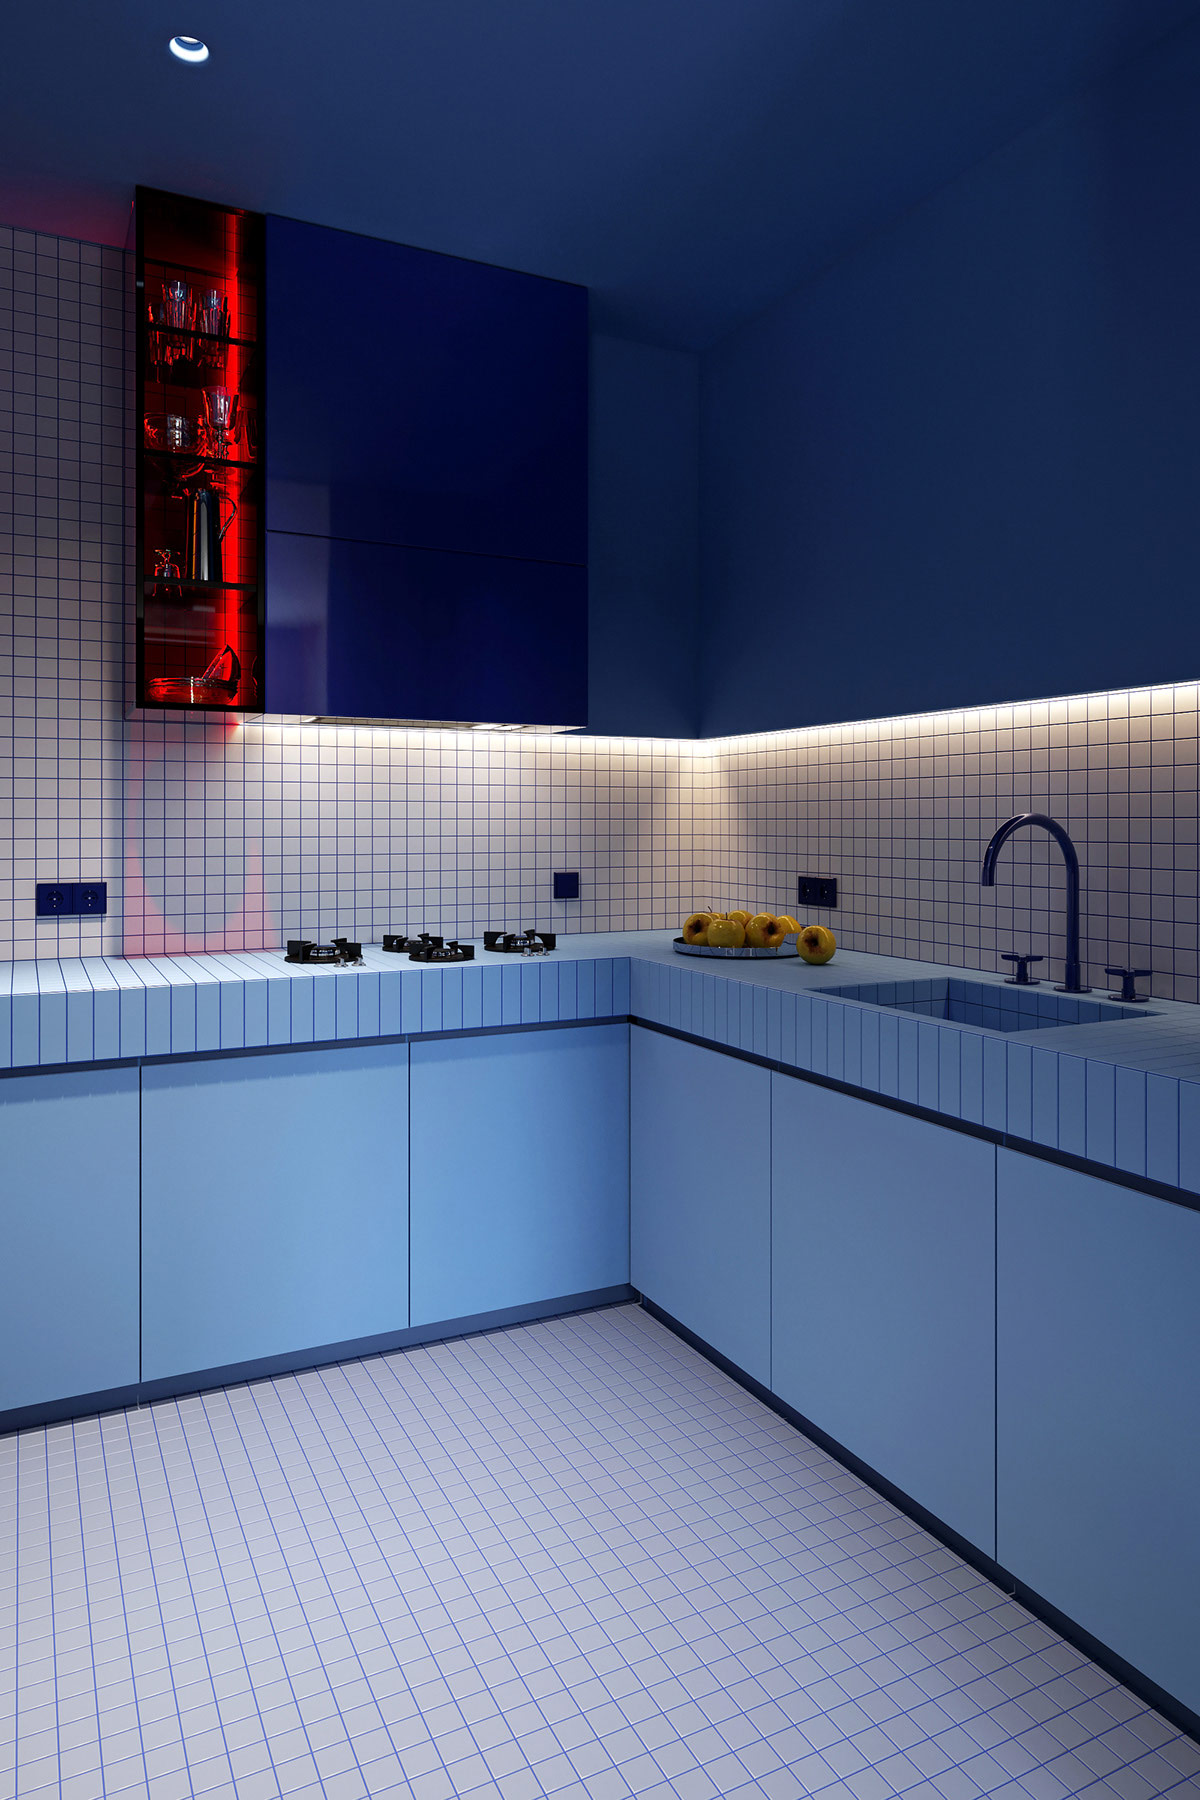 Khu vực nấu nướng được thiết kế với kiểu tủ chữ L phù hợp với cấu trúc của căn hộ và sử dụng không gian hiệu quả. Màu xanh đậm kết hợp với backsplash màu trắng kẻ ô vuông mang đến sự tương phản bắt mắt.